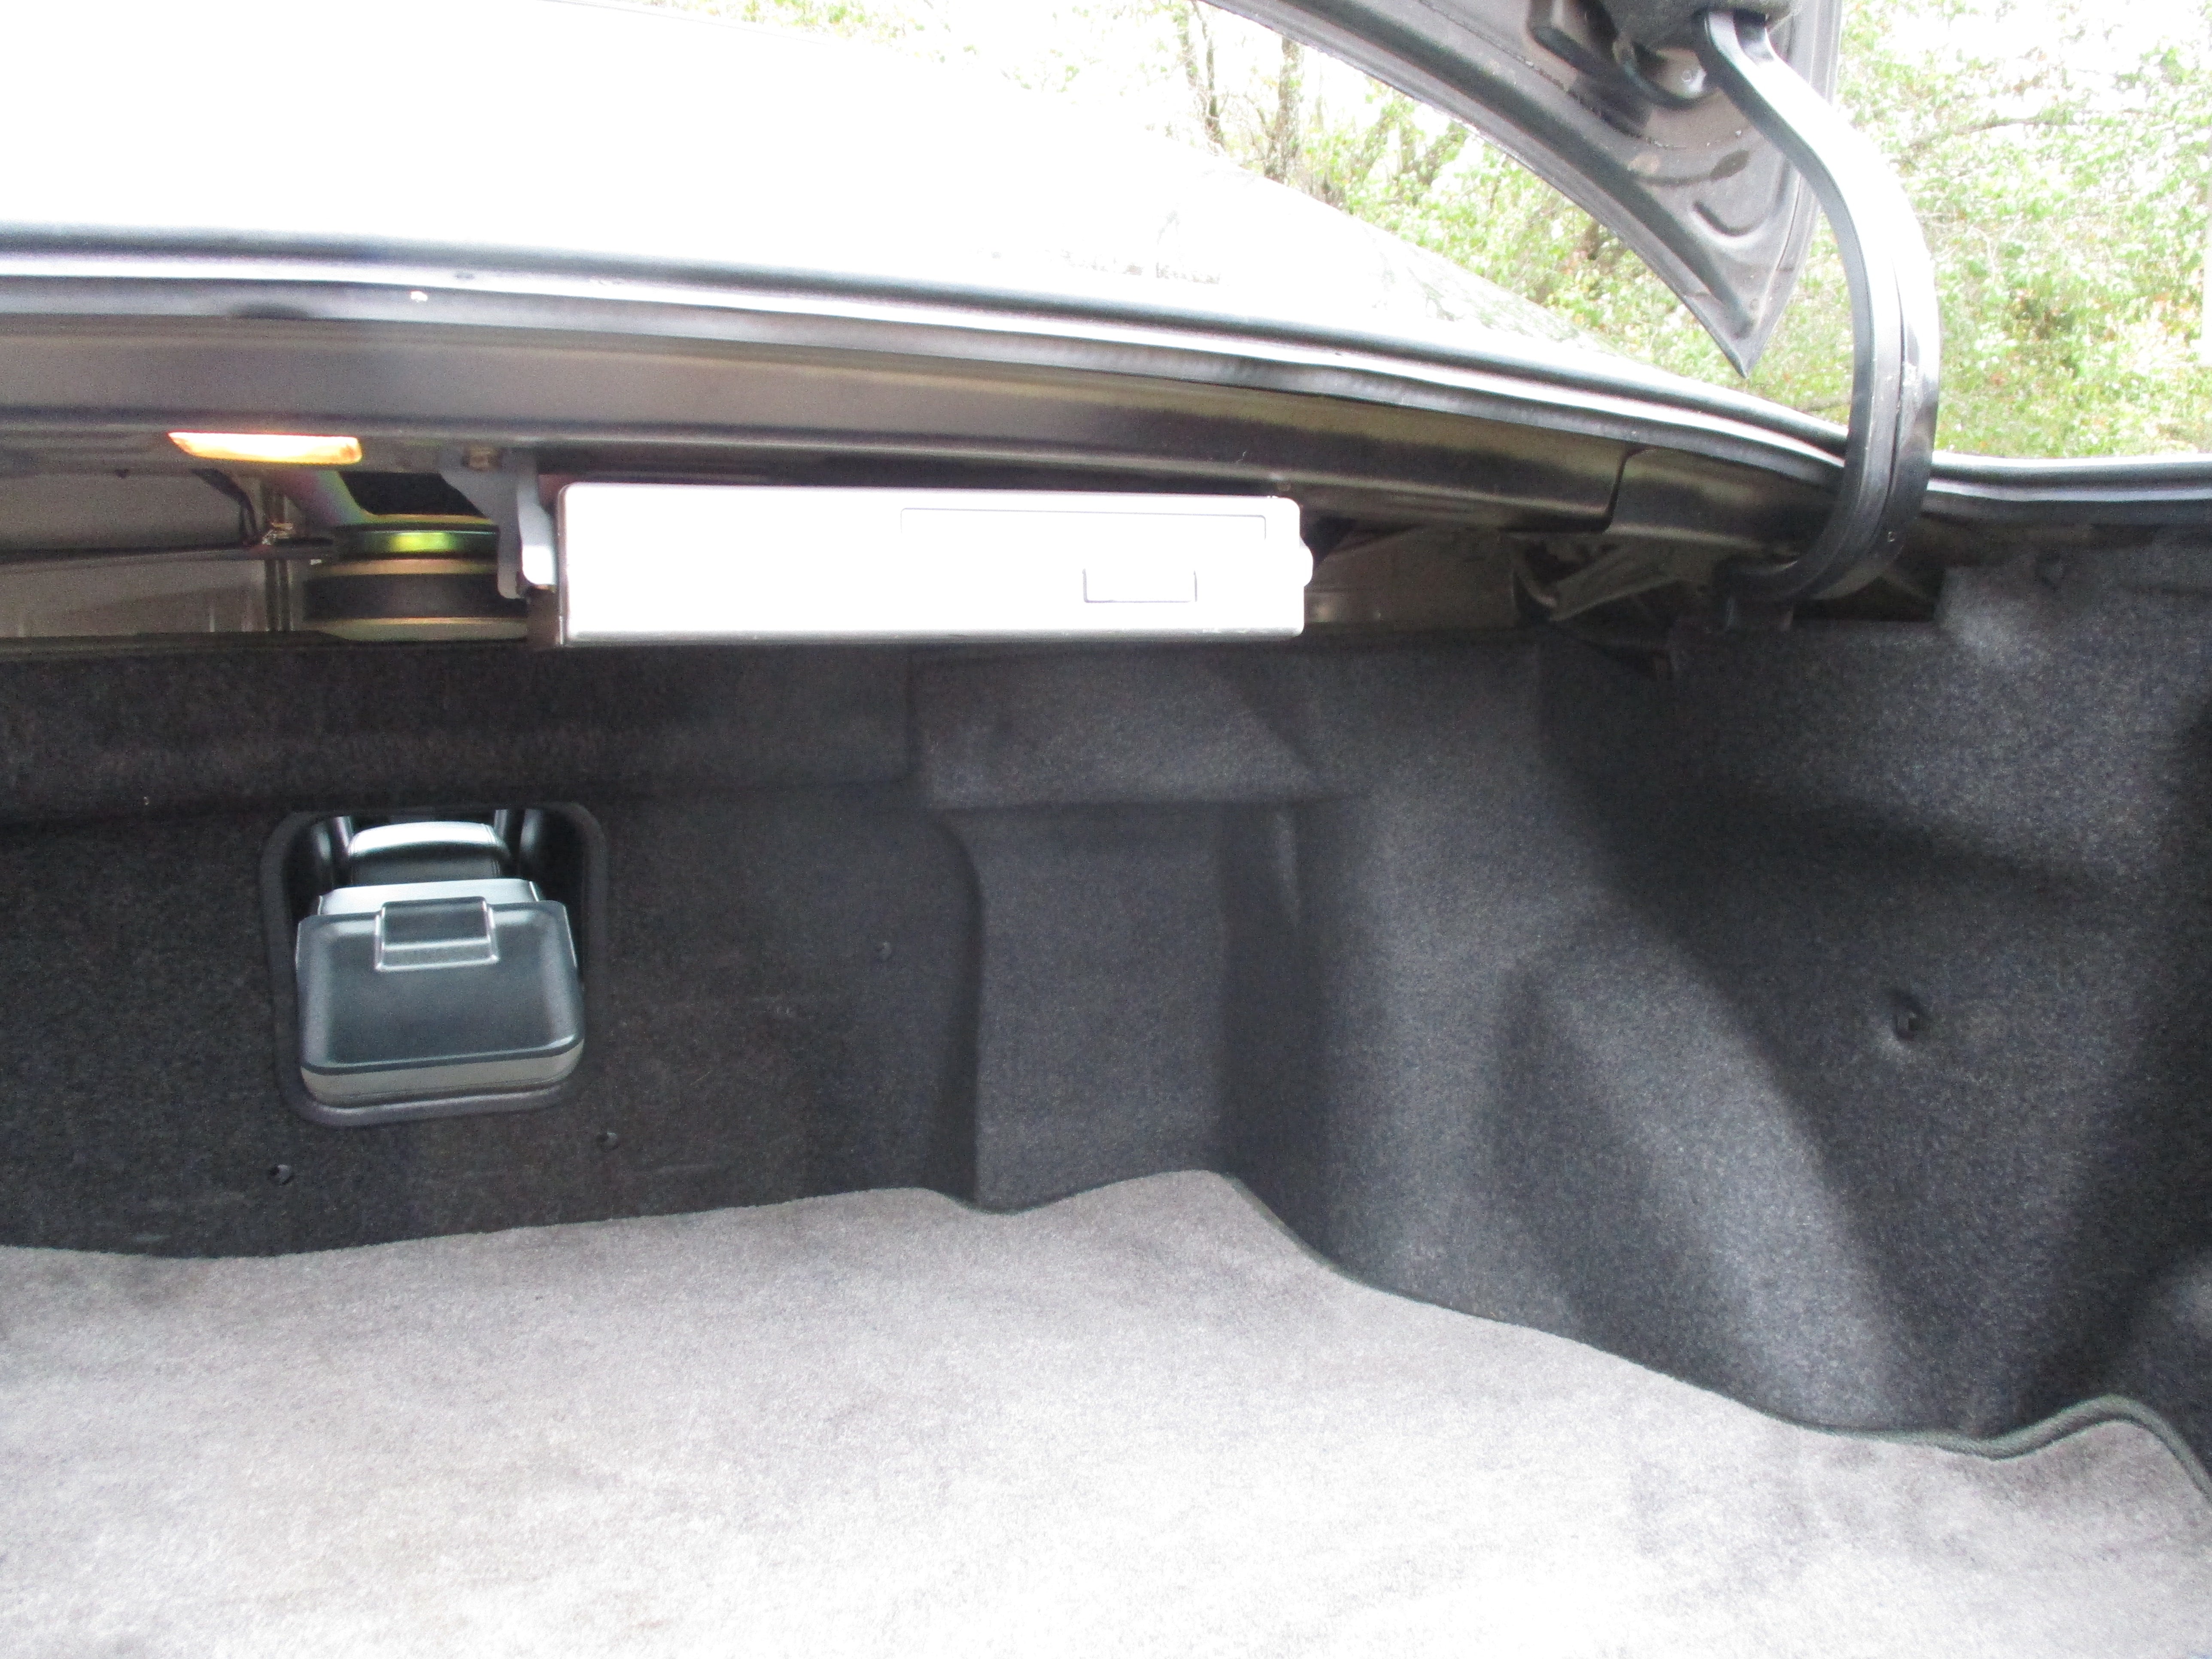 JDM 96 Toyota Windom Couch Edition 3.0G RHD Sedan